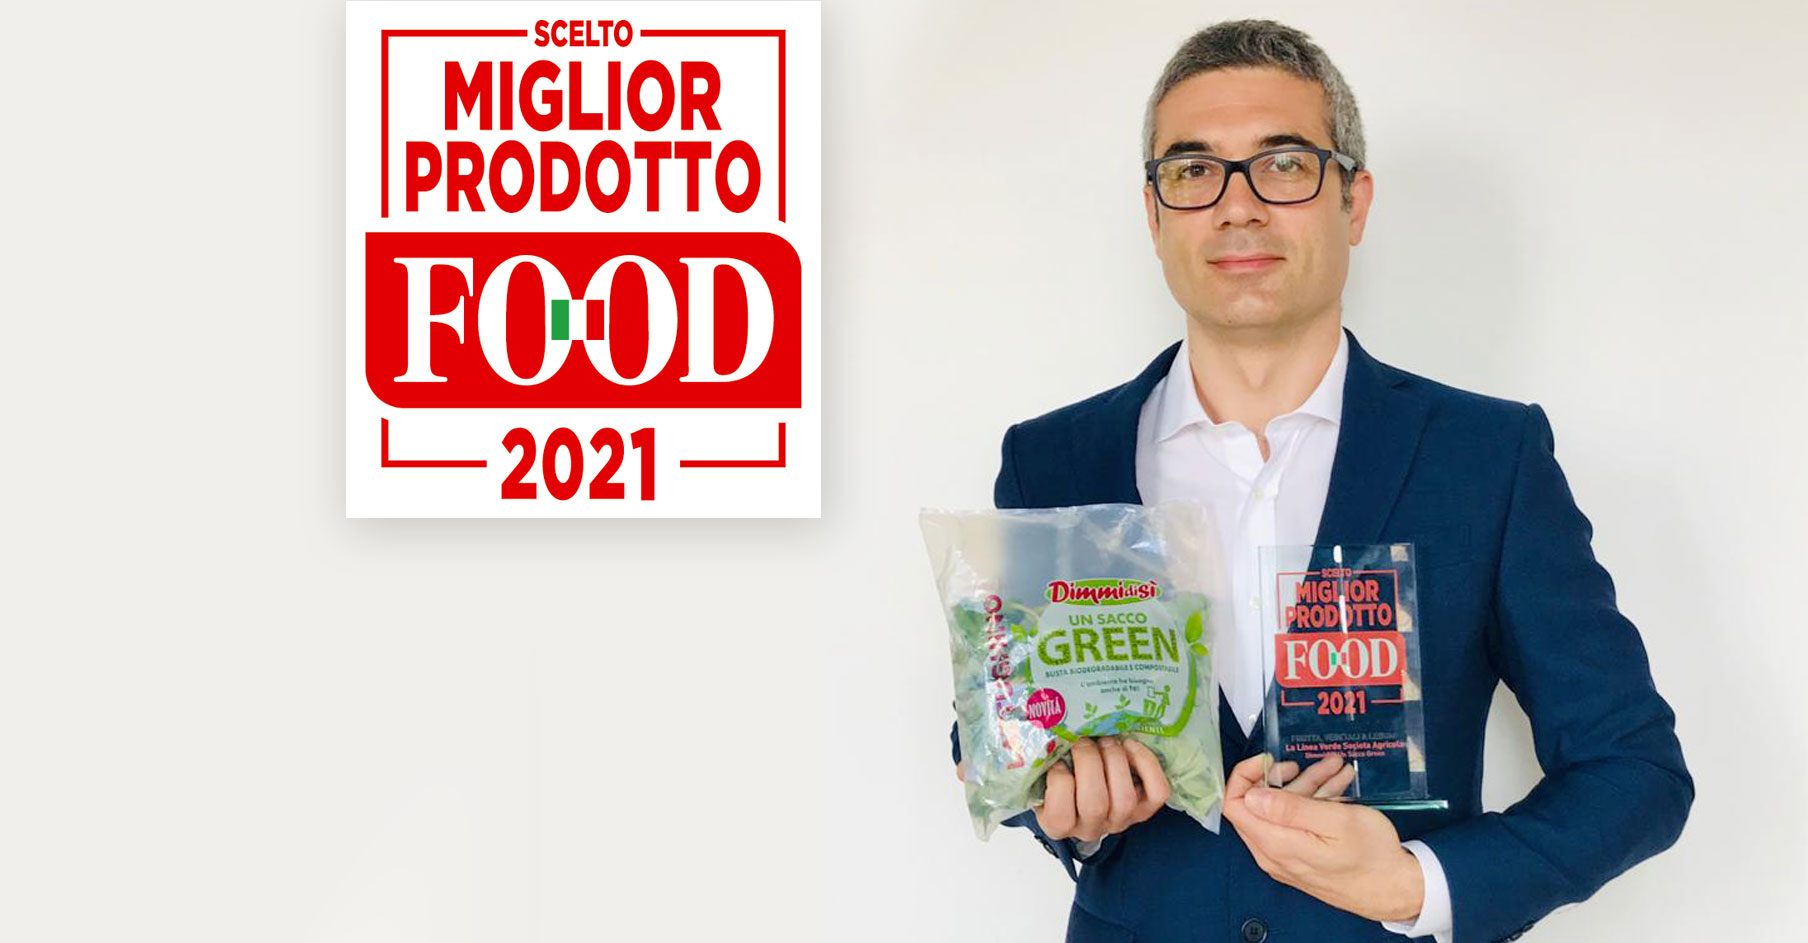 Scopri di più sull'articolo DimmidiSì Un Sacco Green è “Miglior Prodotto Food 2021”